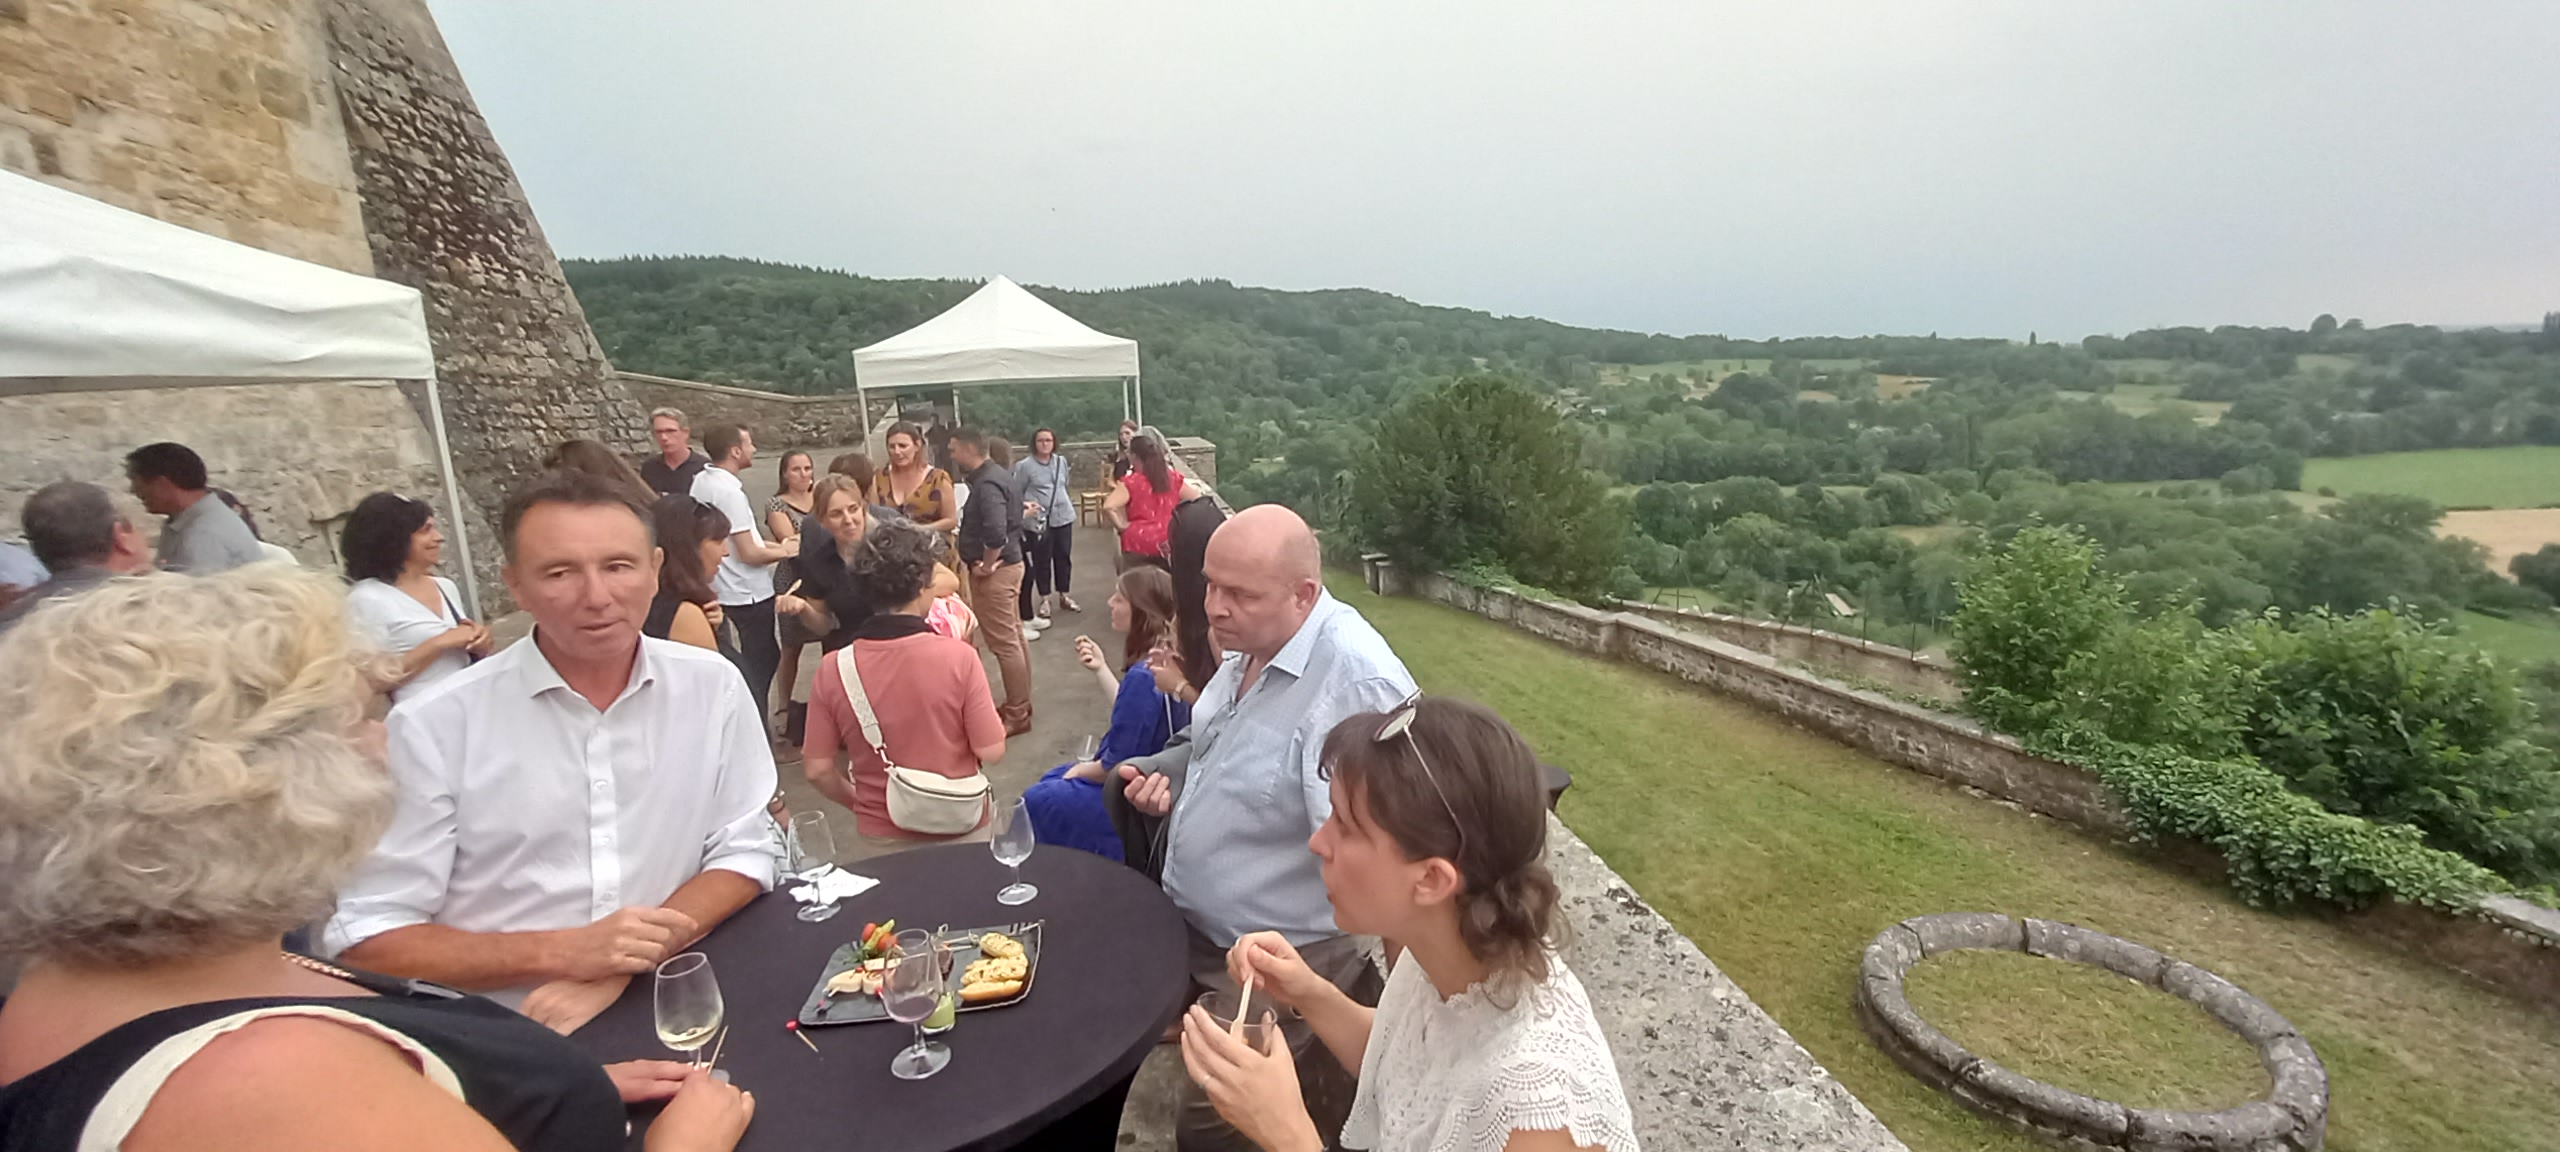 Devant le Château de Varey, des dizaines de personnes profitent du cocktail en pleine air devant la vue panoramique sur la plaine.